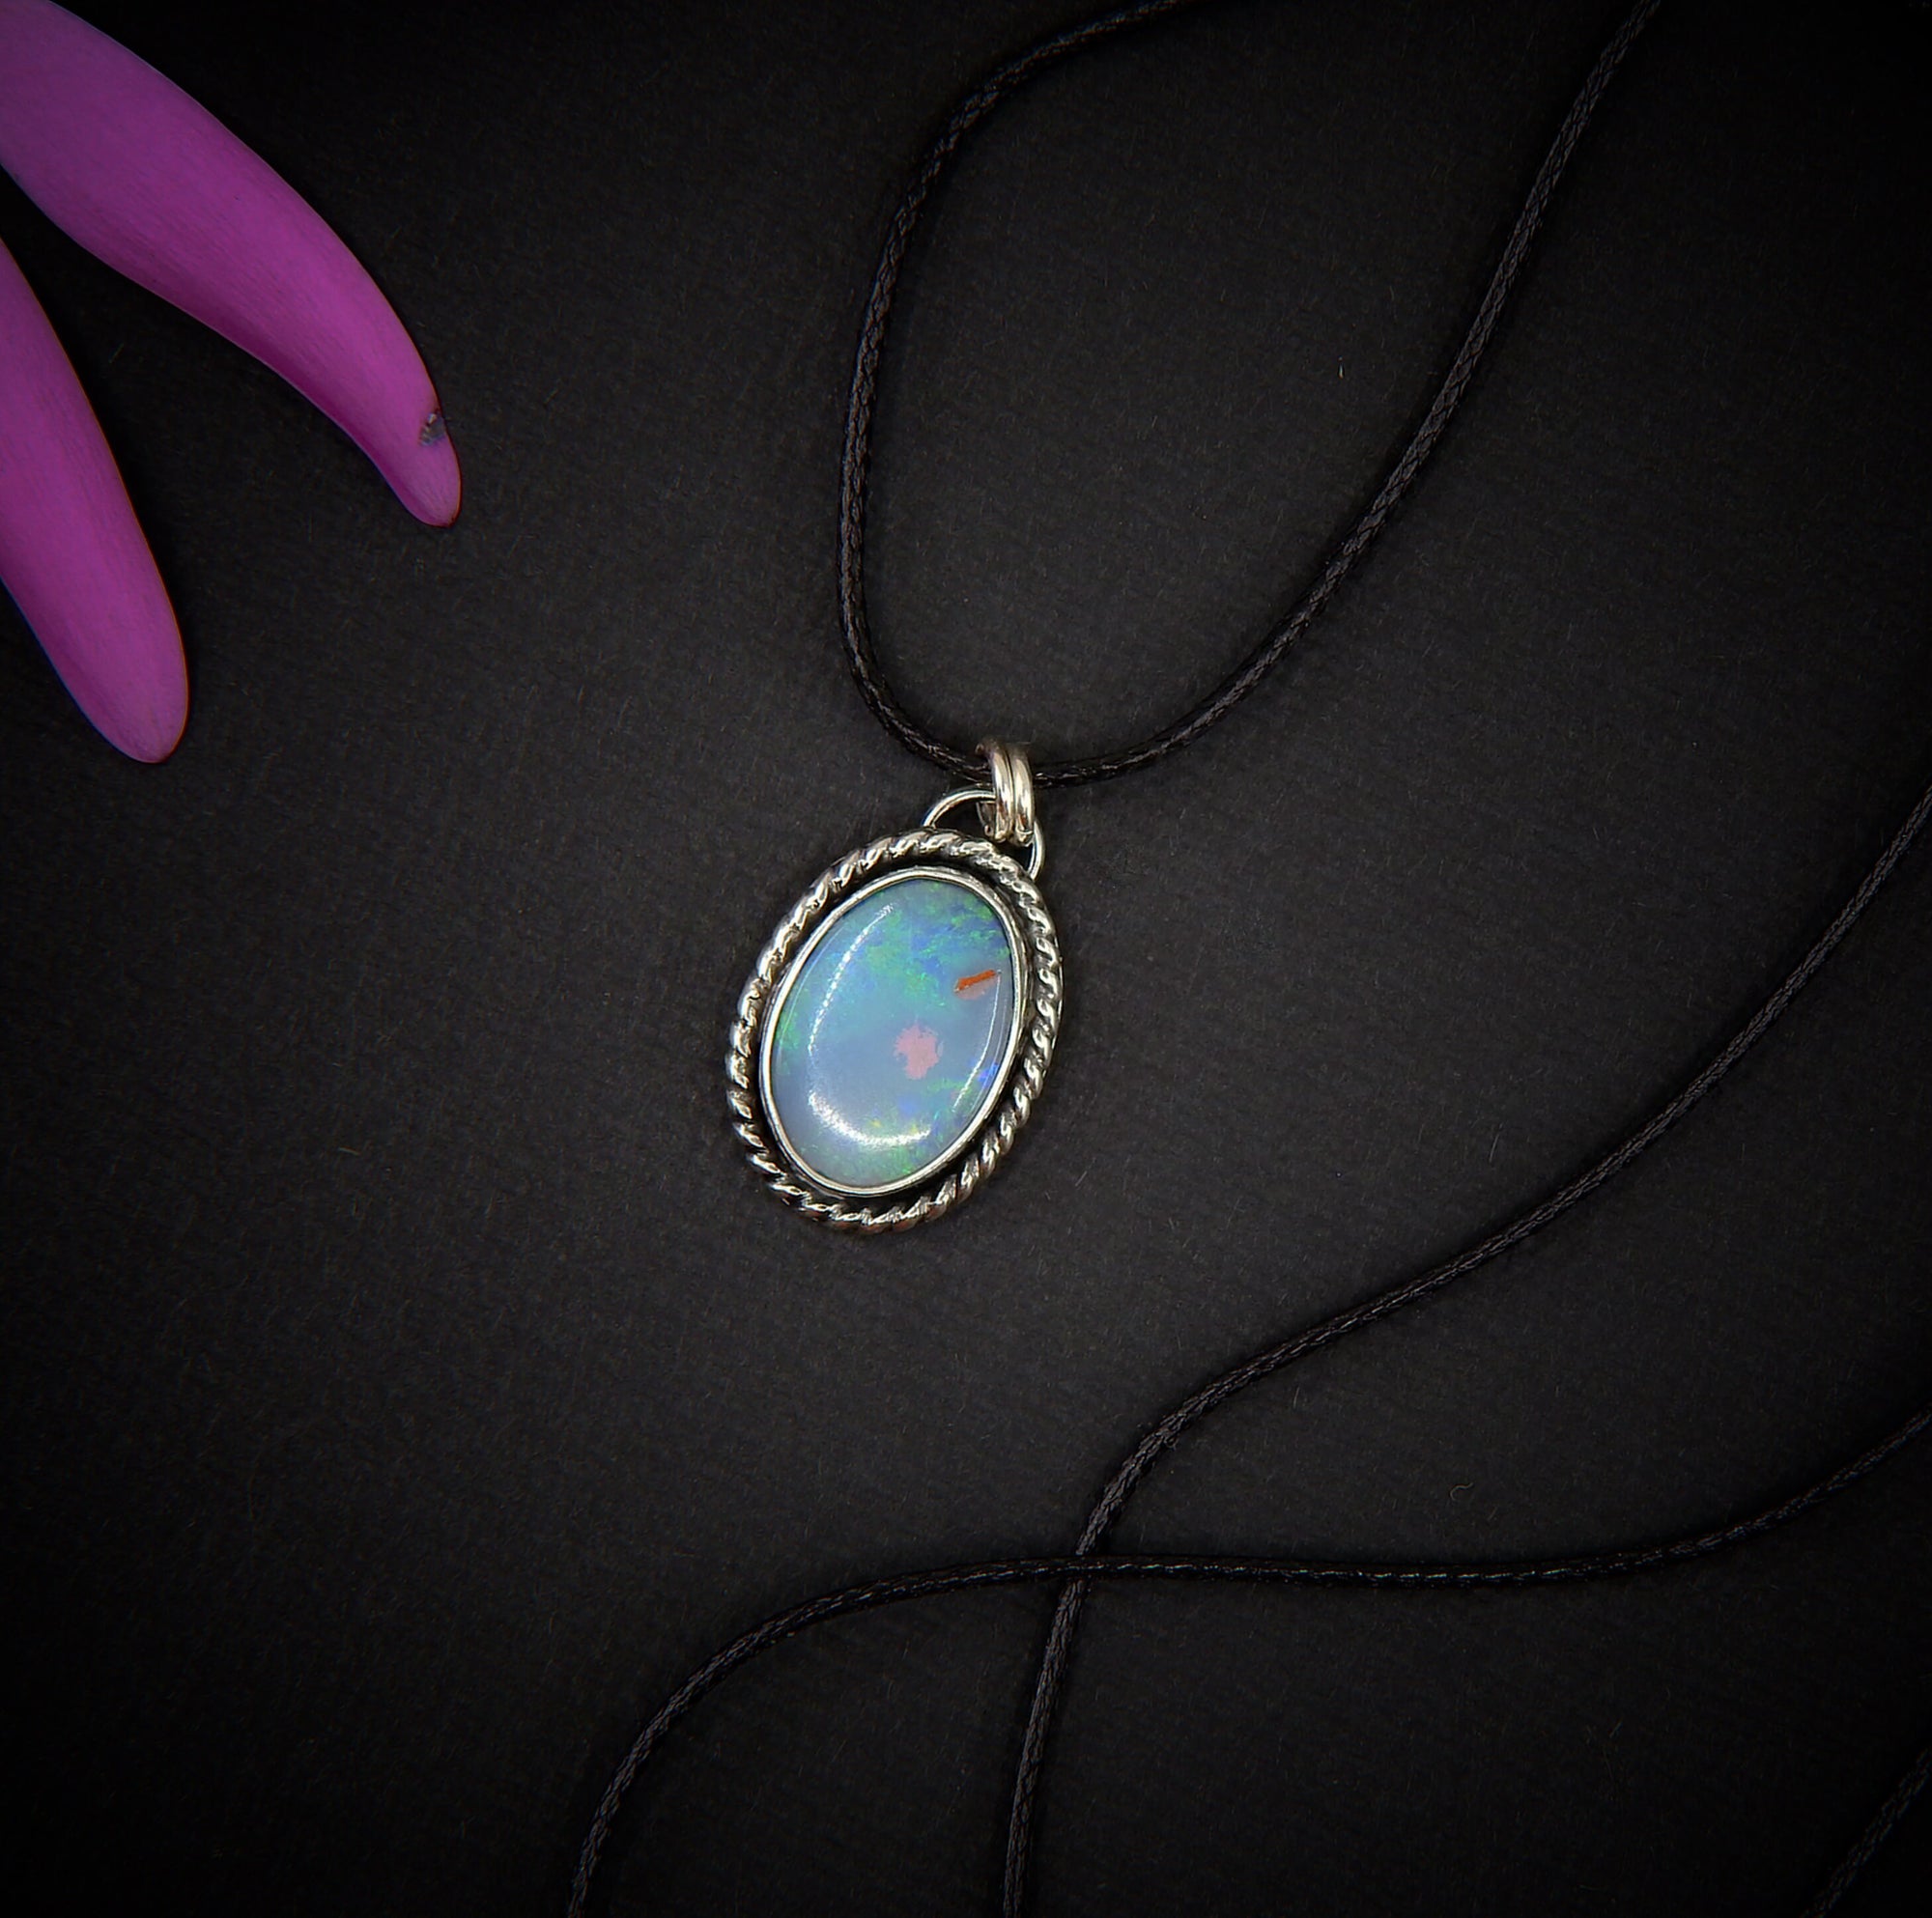 Australian Opal Pendant - Lightning Ridge Opal Necklace - Blue Australian Opal Jewellery - Rainbow Aussie Opal OOAK - Oval Opal Pendant